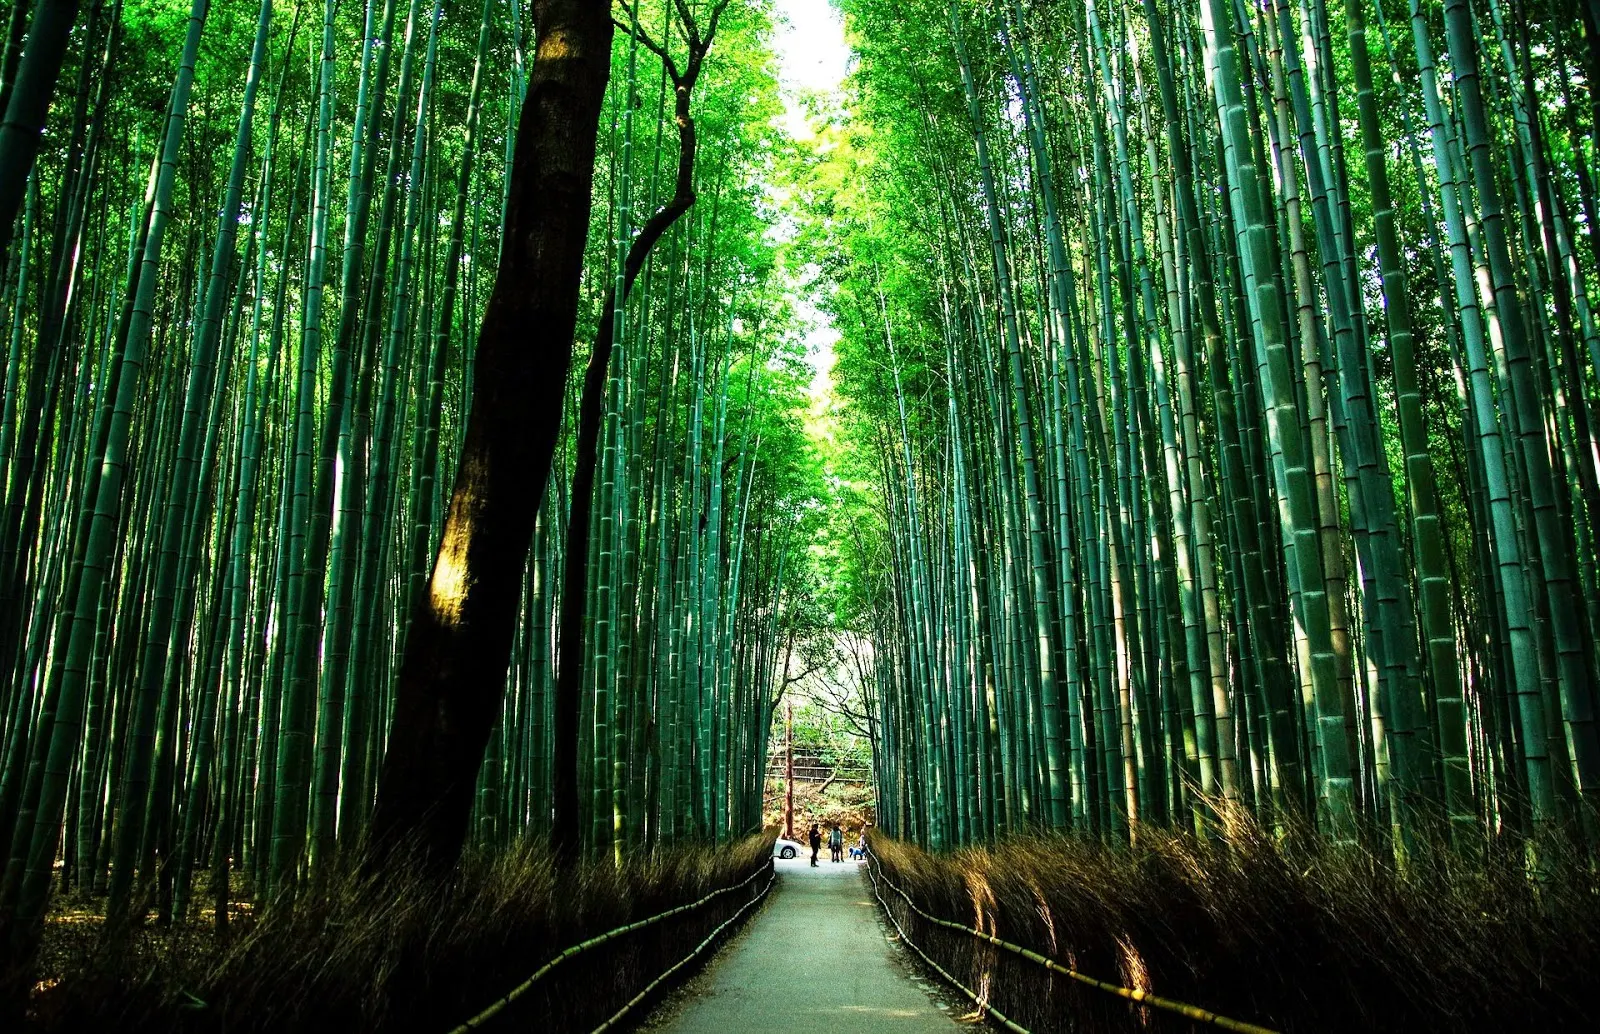 京都-京都景點-推薦-嵐山-Arashiyama-京都自由行-京都觀光景點-一日遊-京都旅遊-市區-京都必去景點-京都好玩景點-行程-京都必遊景點-日本-Kyoto-Tourist-Attraction